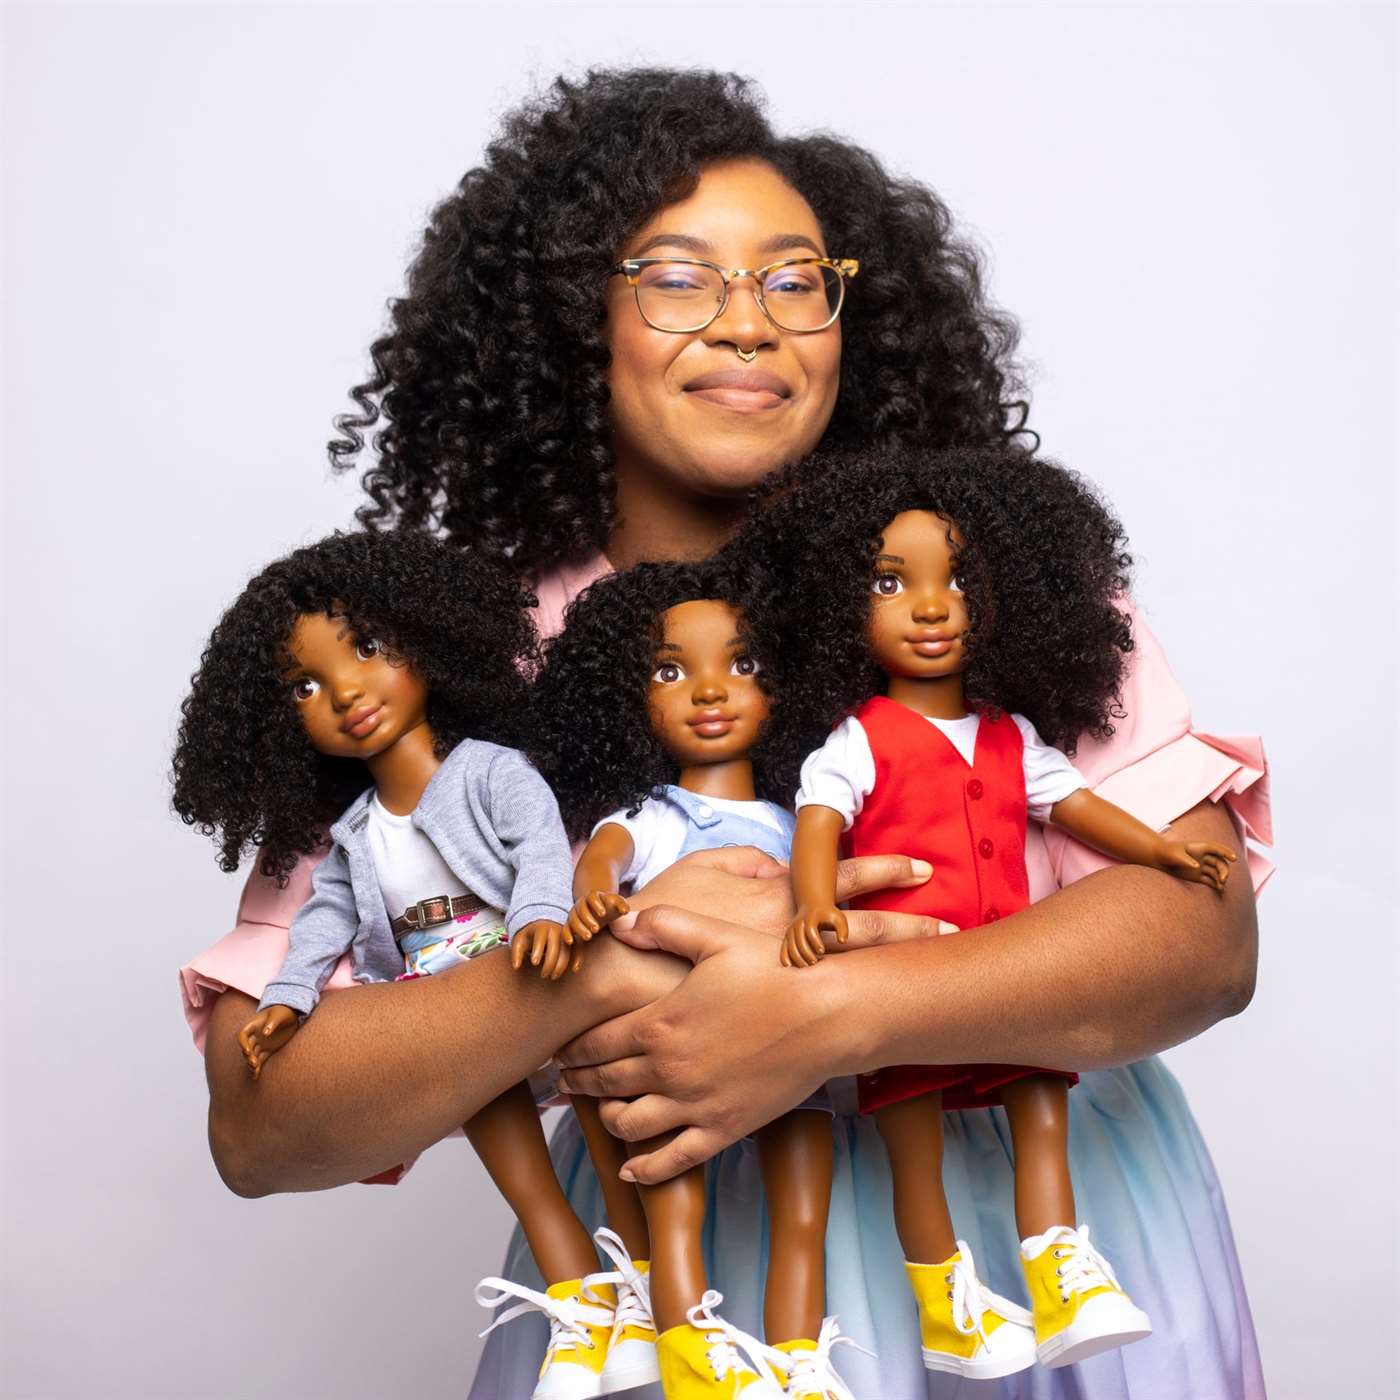 Yelitsa, người sáng lập Healthy Roots Dolls ôm ba con búp bê trên tay